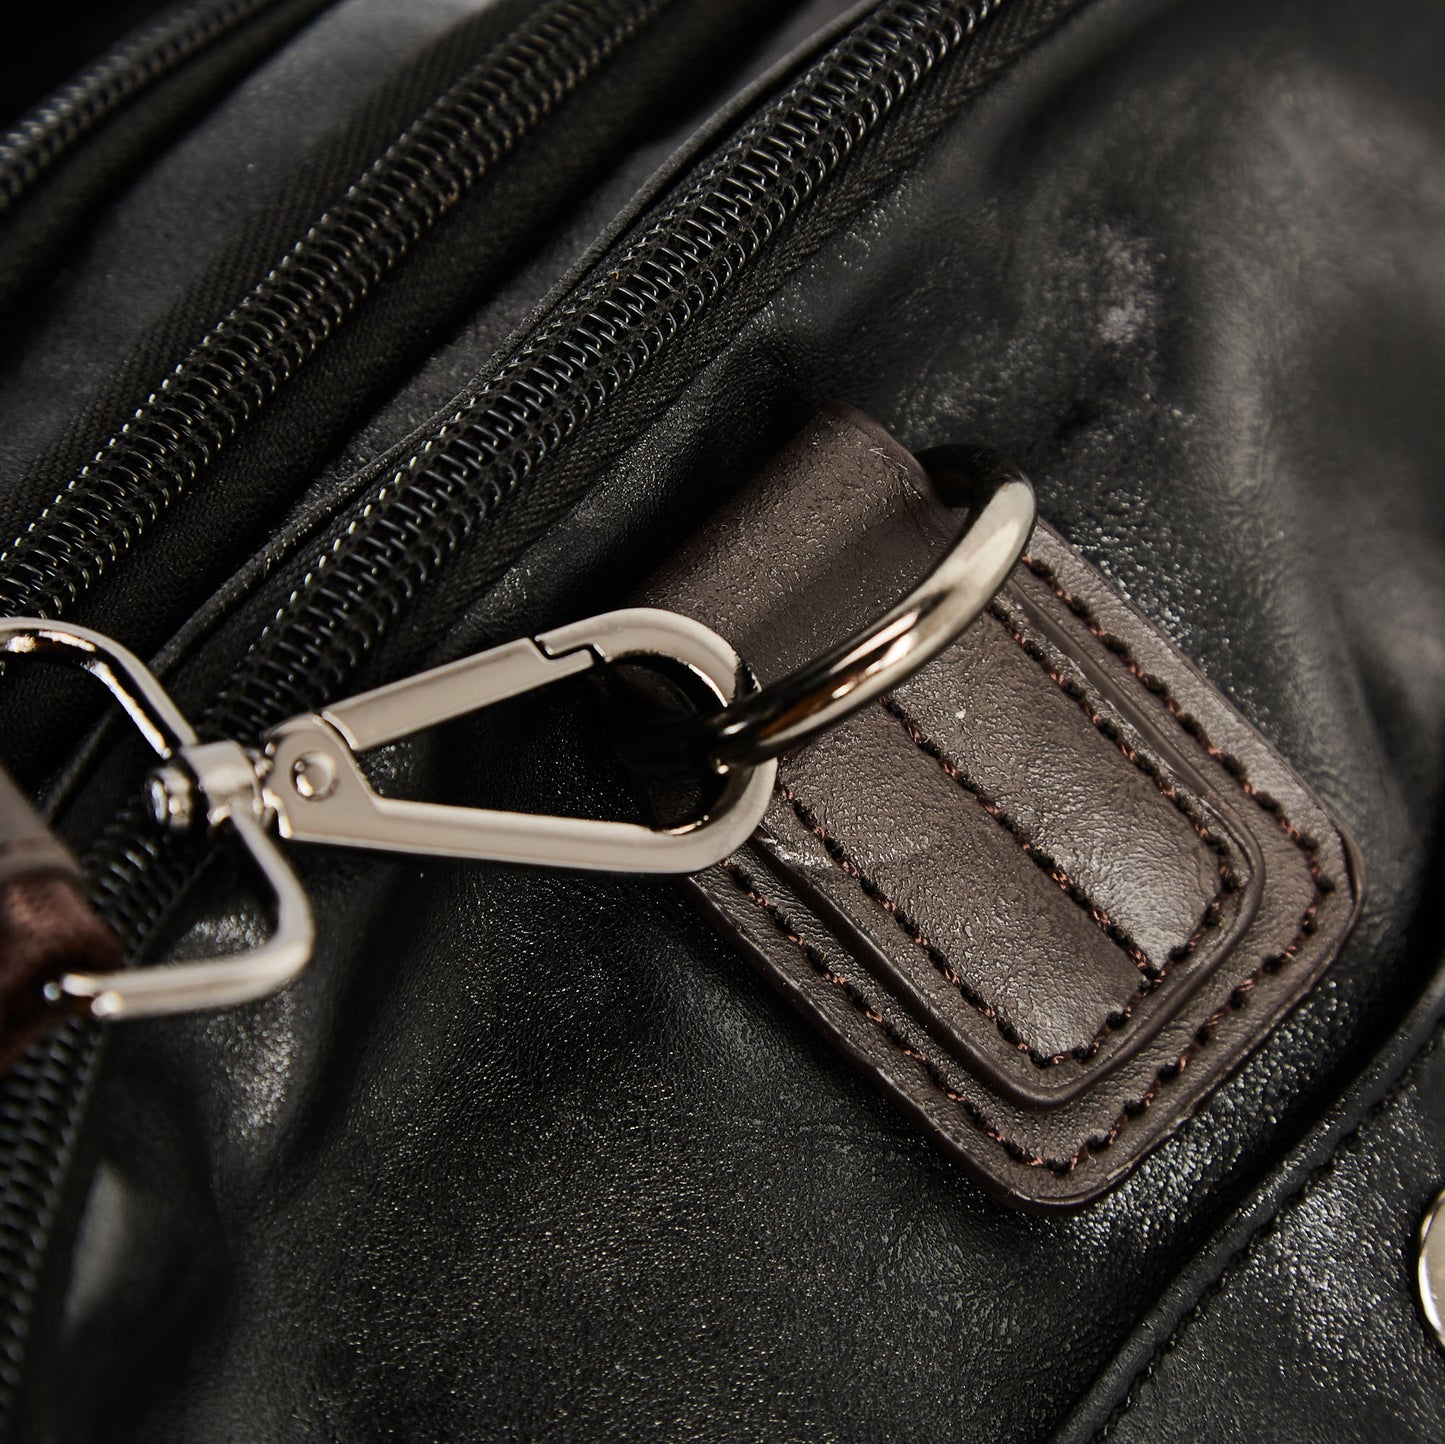 ISUZI ‘The Traveler’ Leather Bag